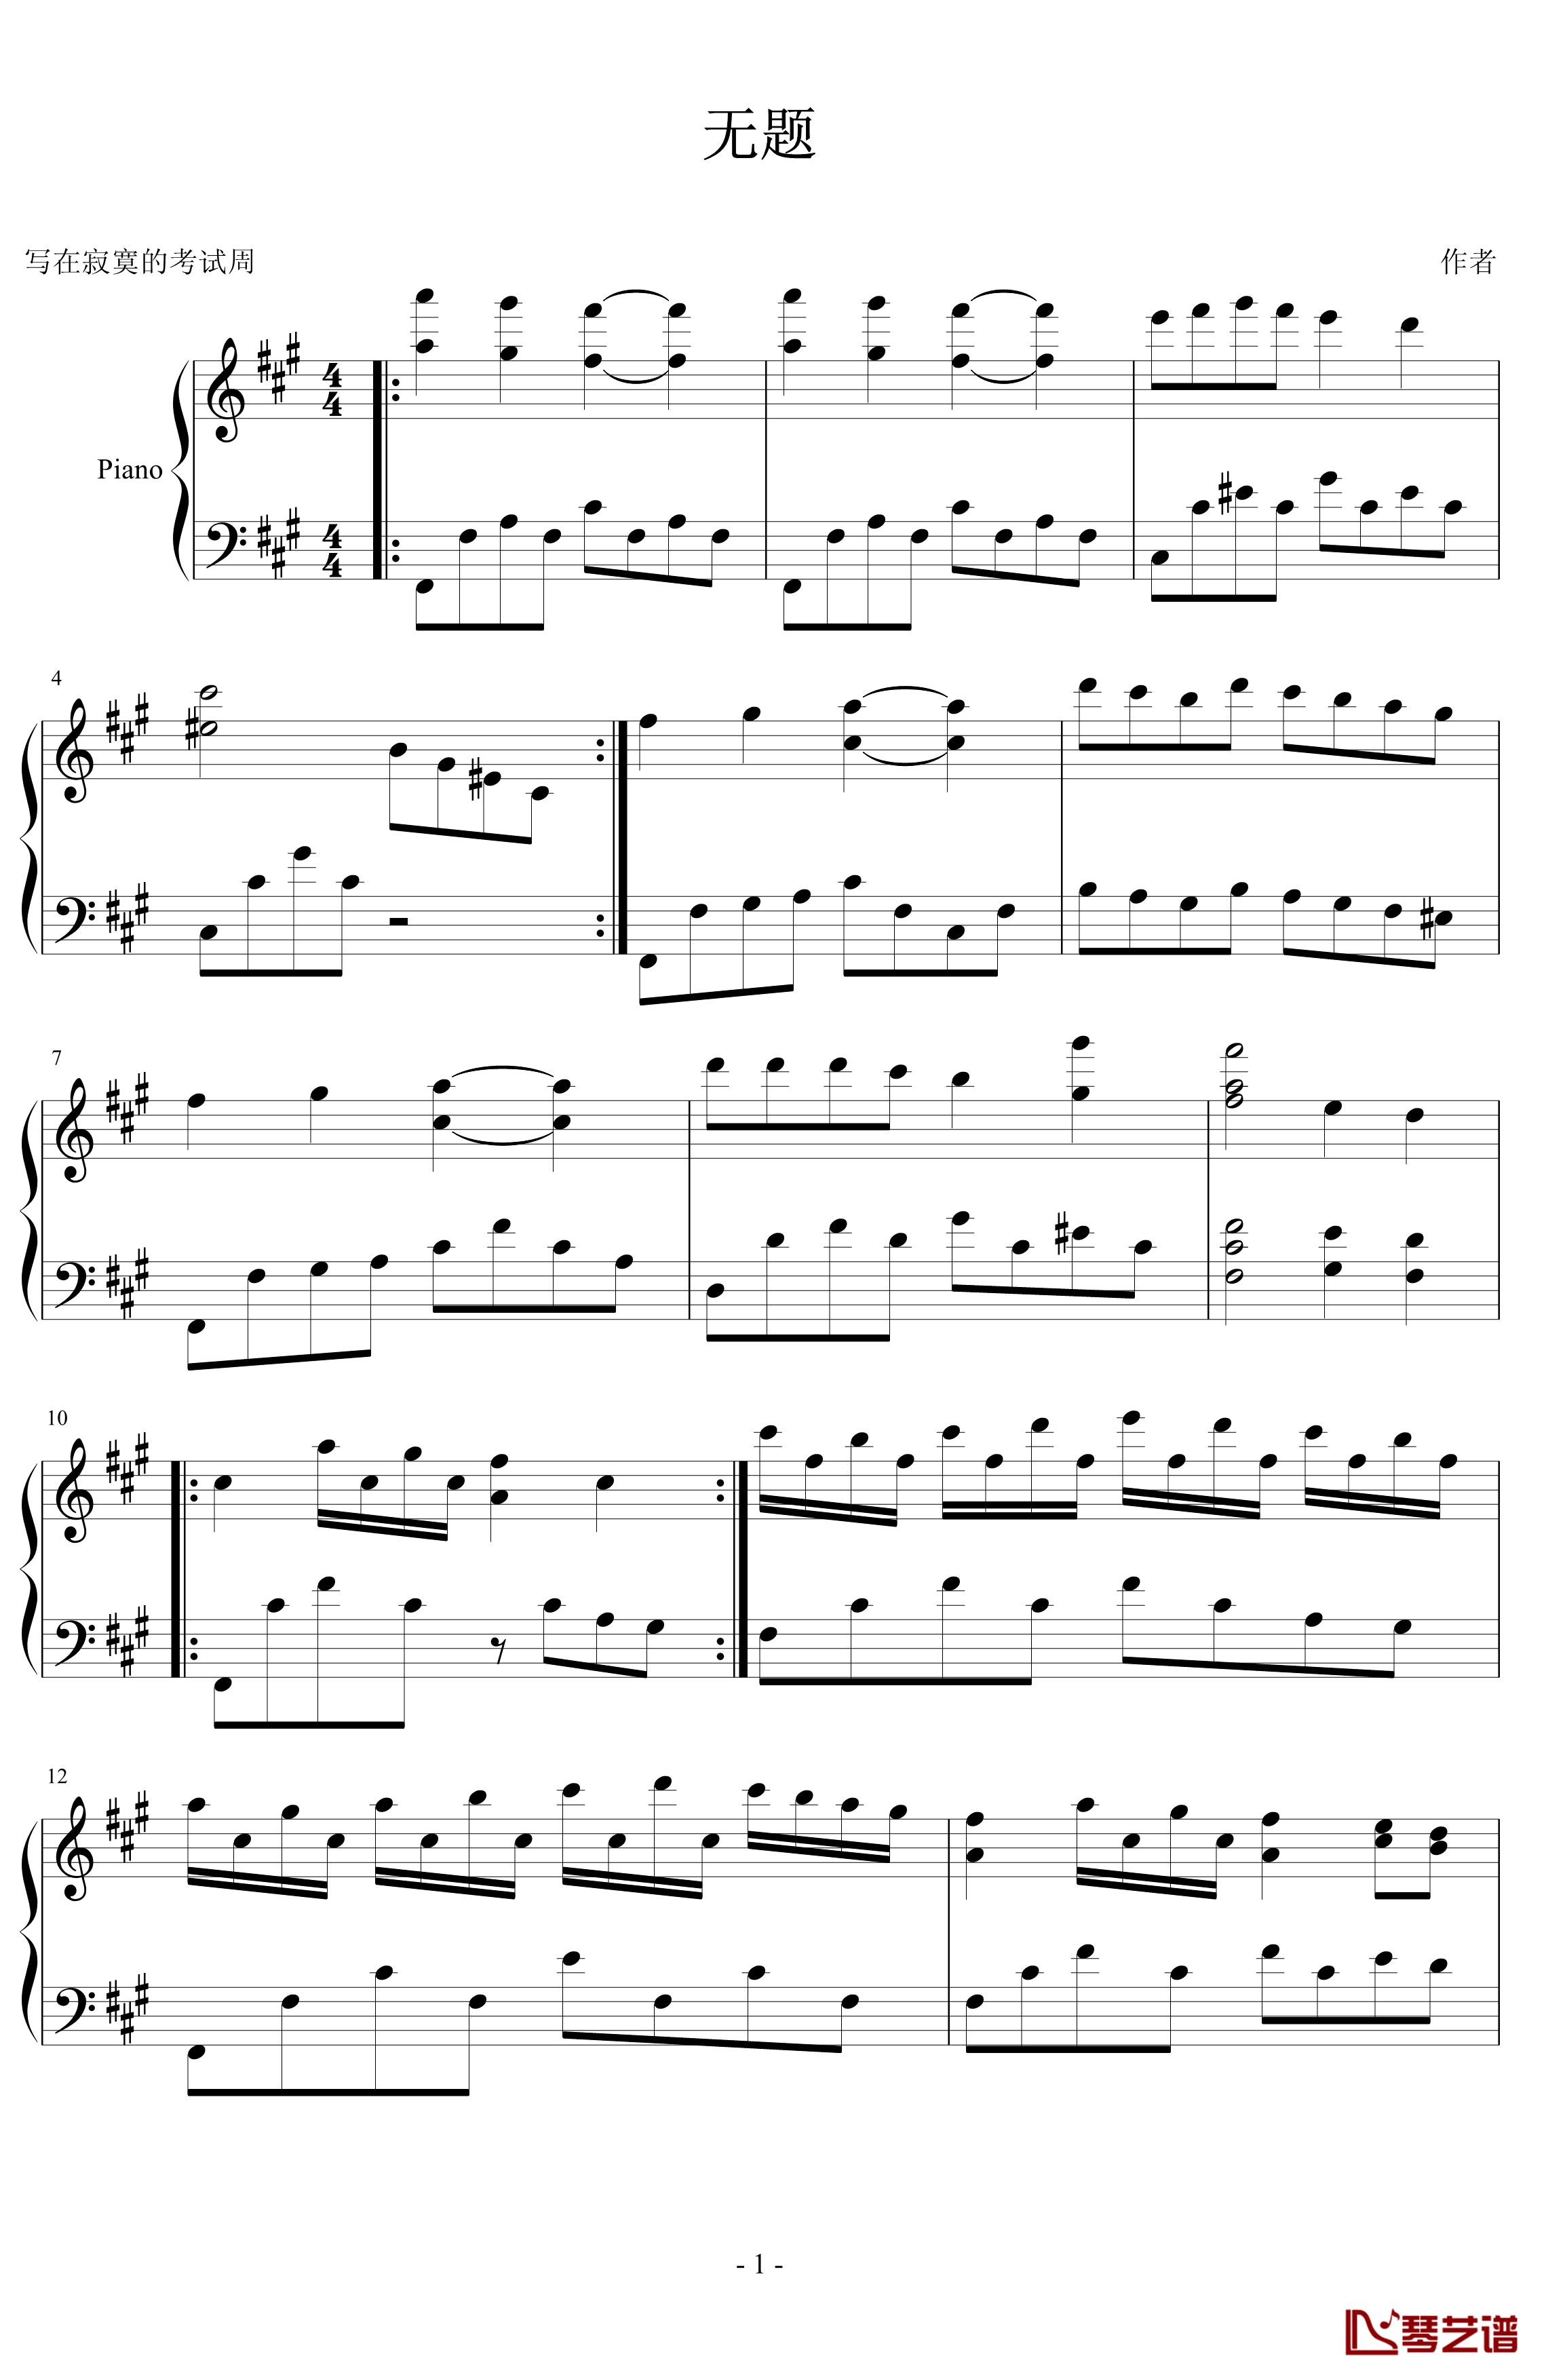 无题钢琴谱-PARROT1861